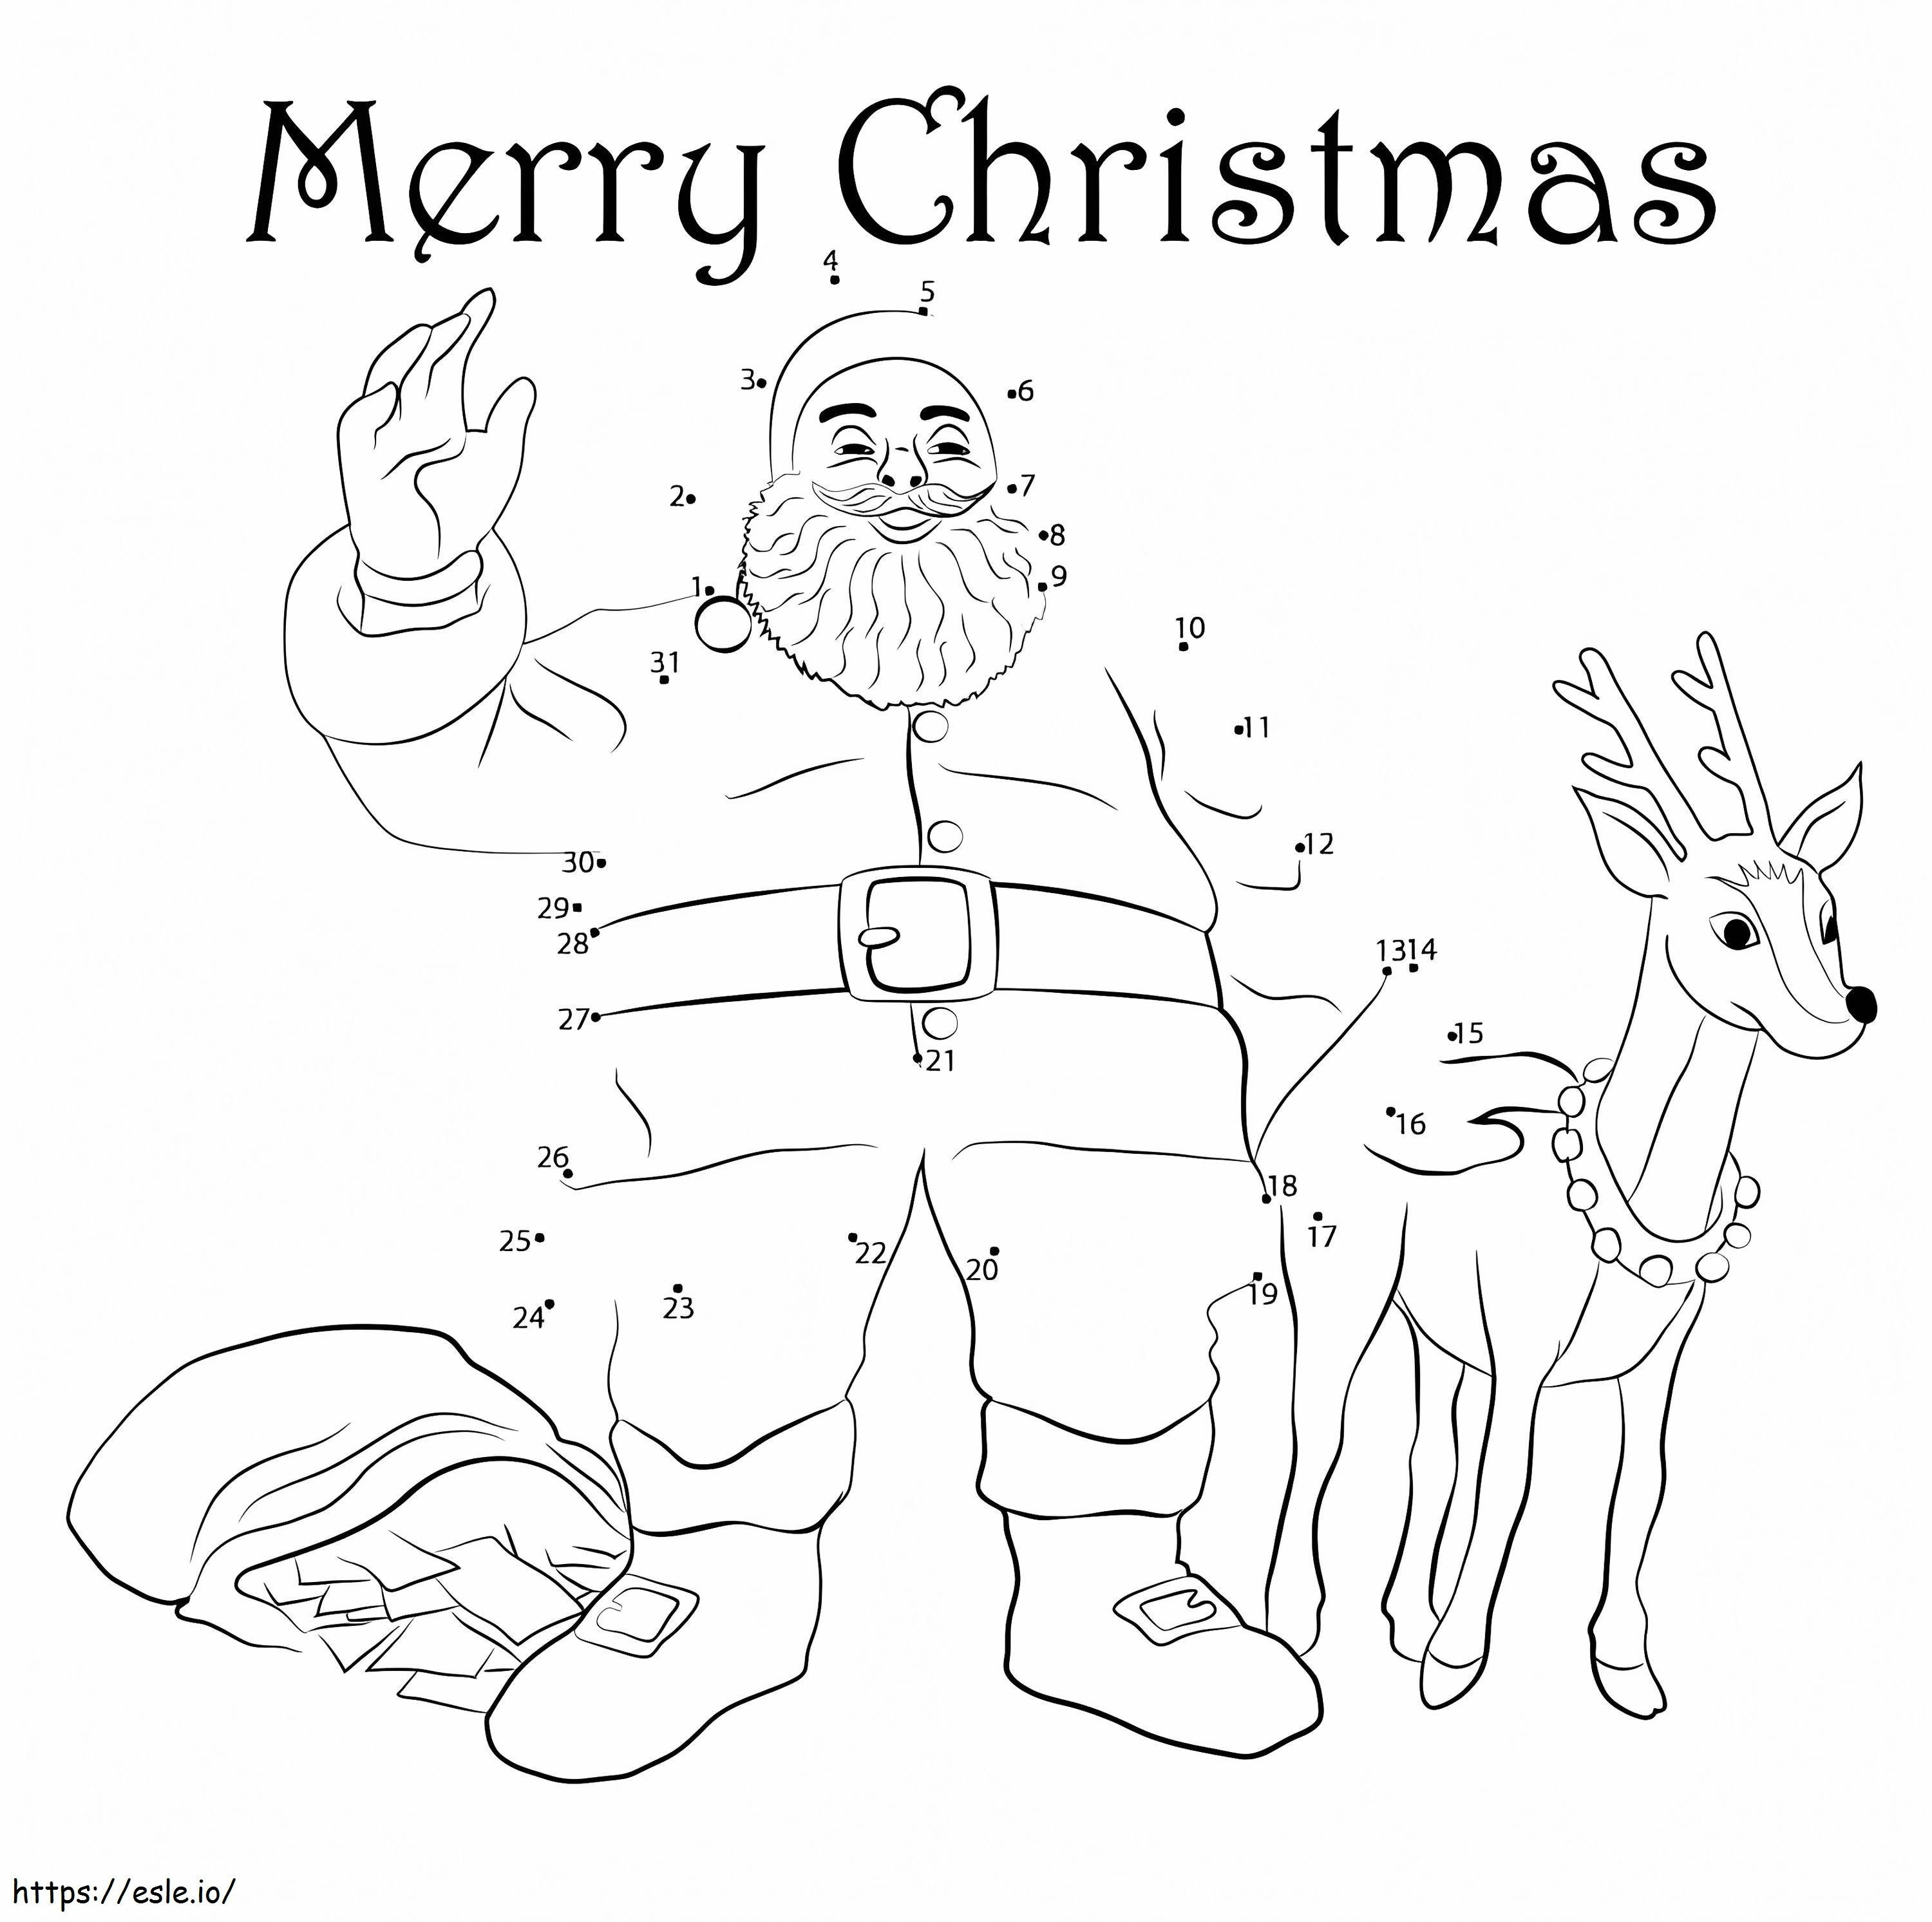 Papá Noel y renos Unir puntos para colorear